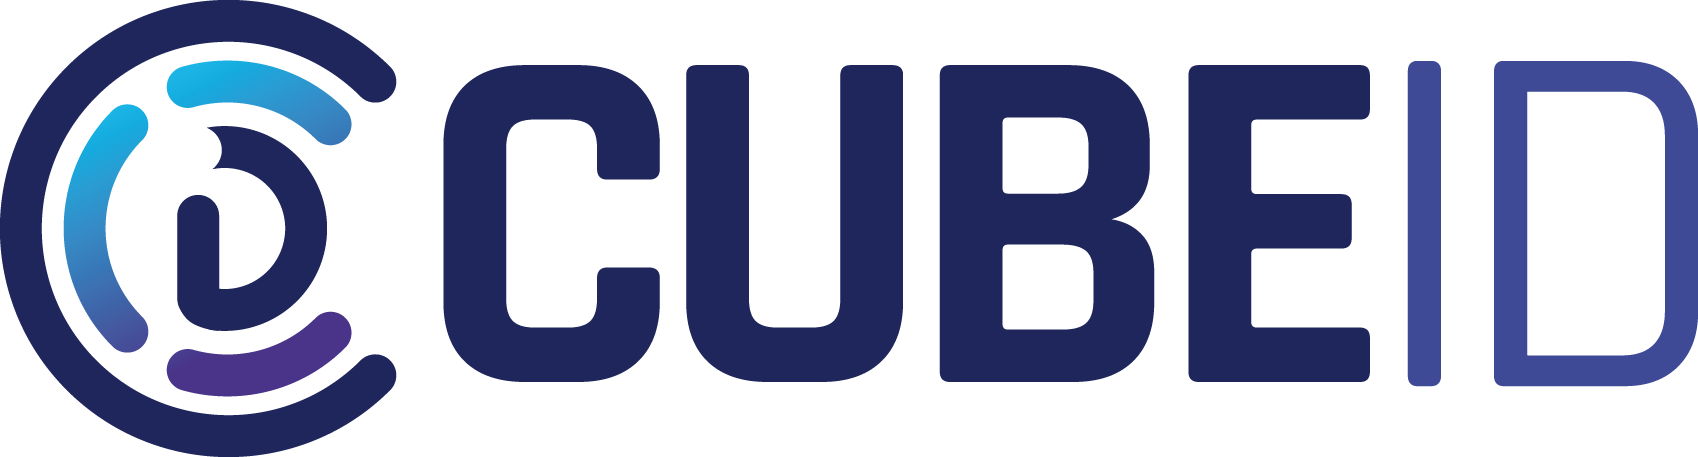 logo_cube_id